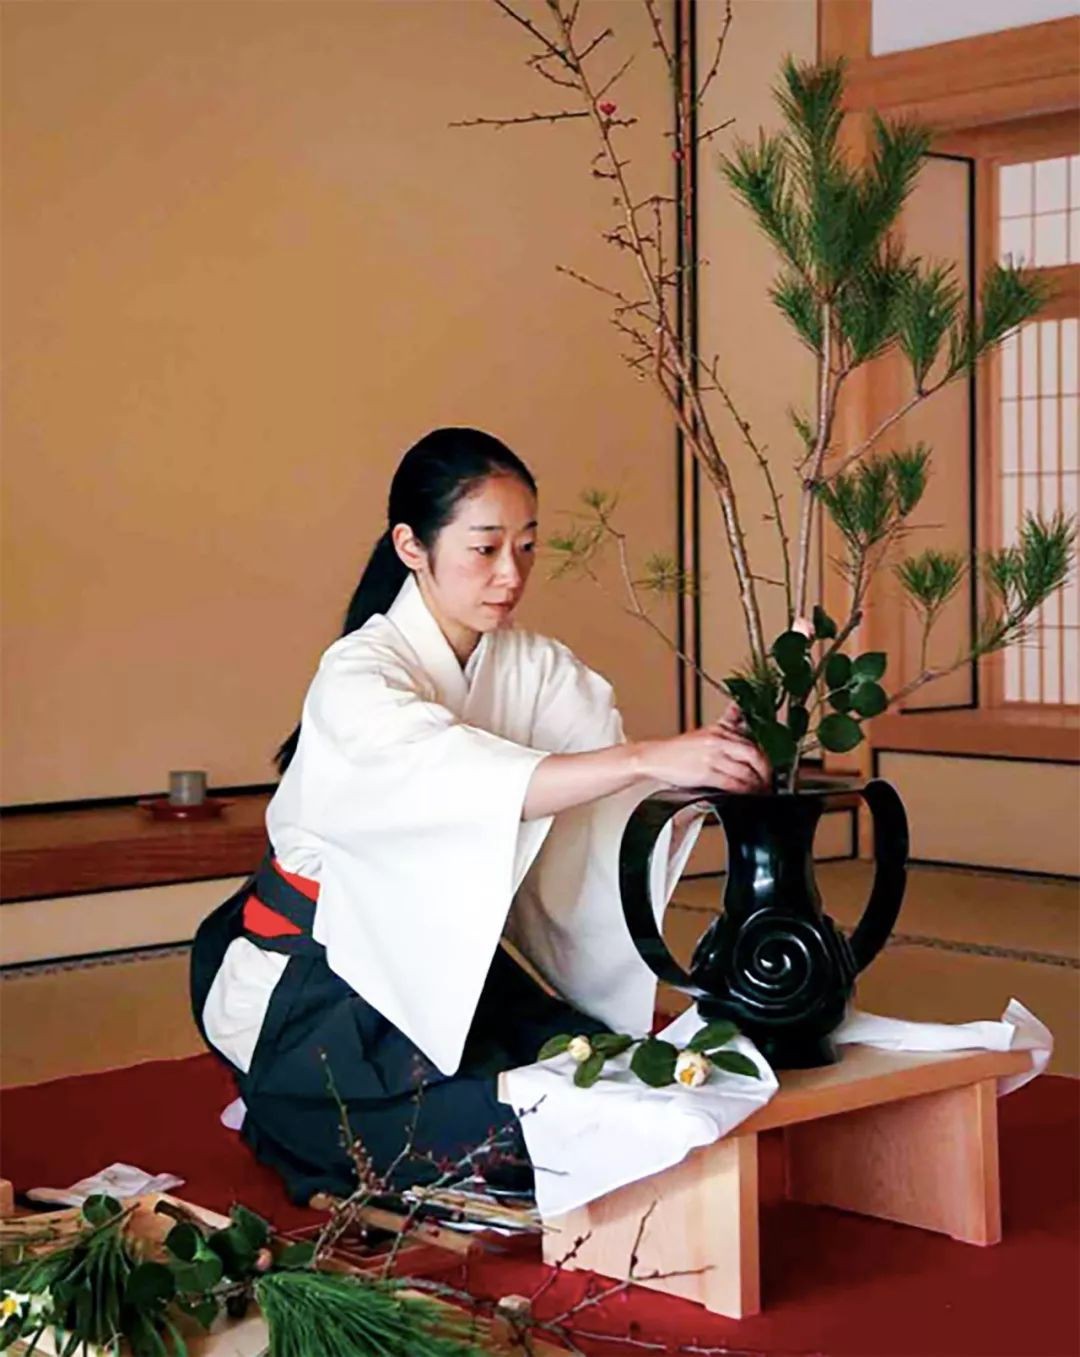 Sau 10 năm ẩn dật, người phụ nữ Nhật Bản trở thành kho báu quốc gia khi được mọi người mệnh danh là bậc thầy cắm hoa - Ảnh 4.